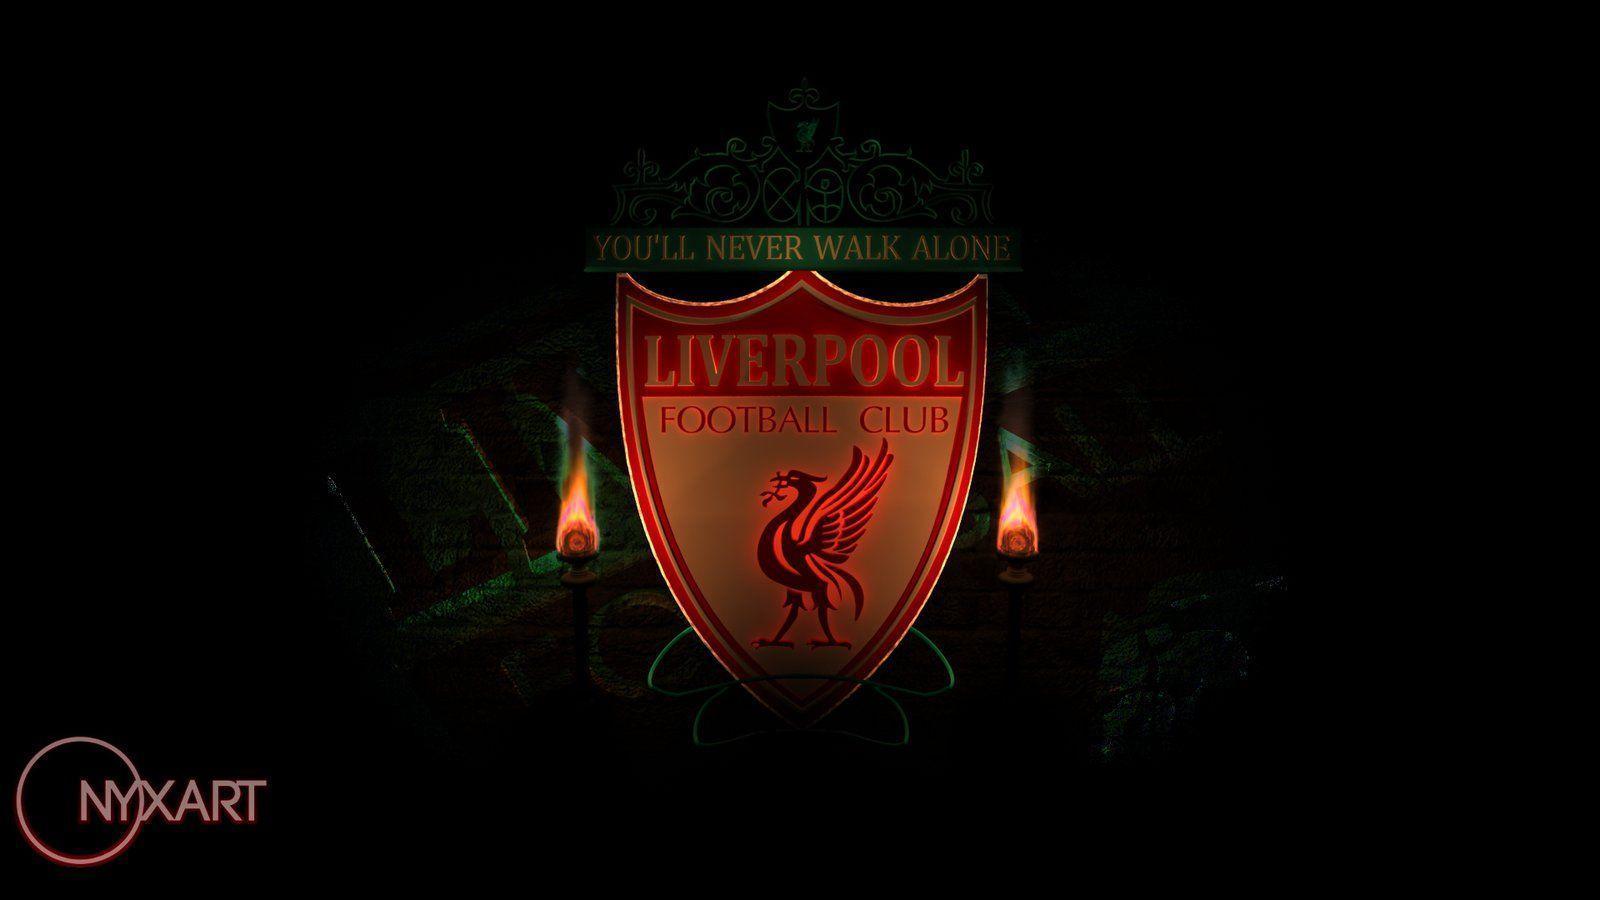 Liverpool FC Wallpaper 2015